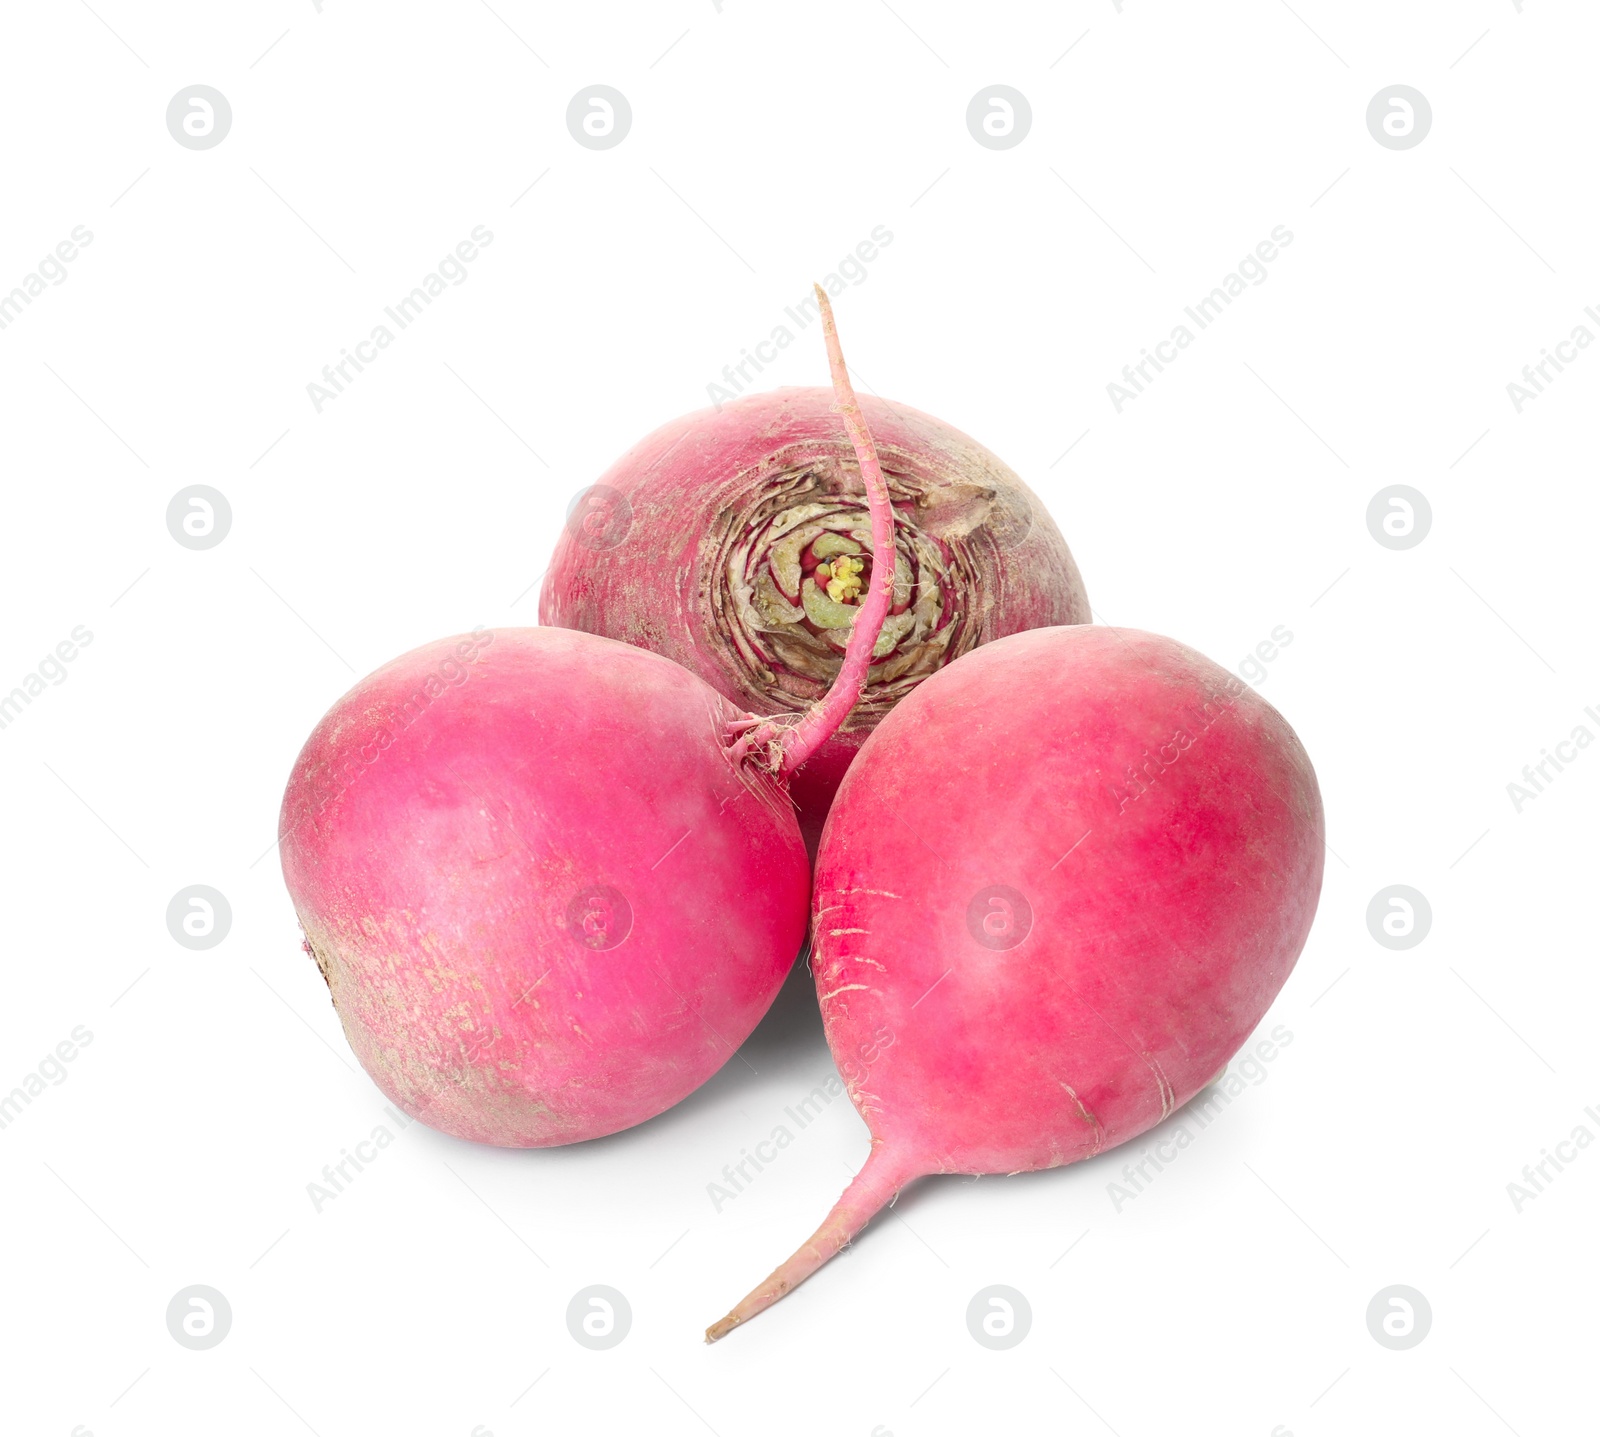 Photo of Whole fresh ripe red turnips on white background